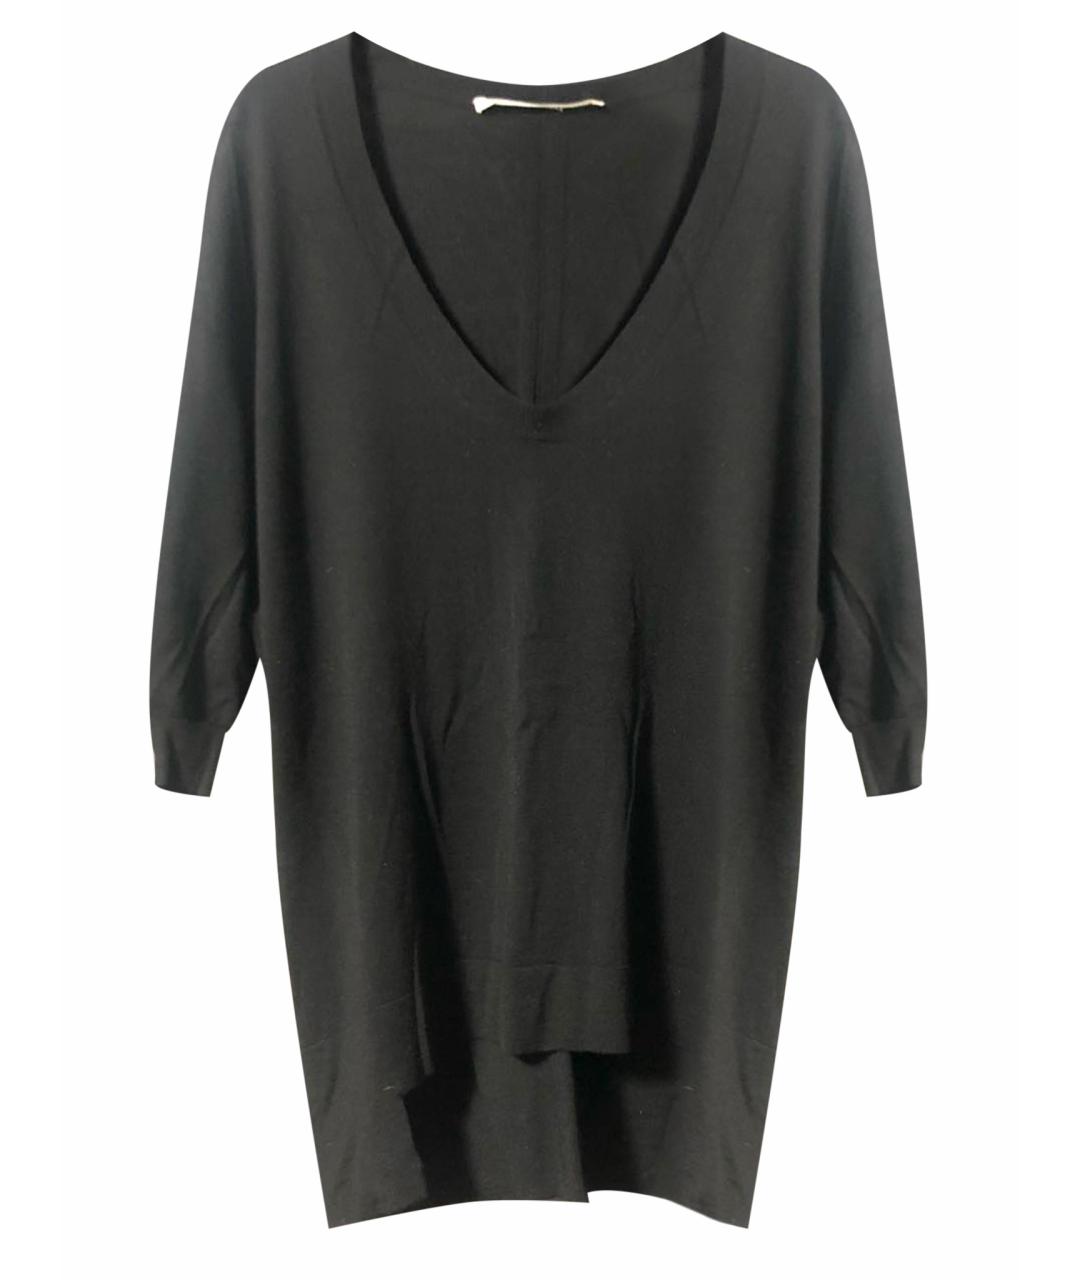 DOROTHEE SCHUMACHER Черный шерстяной джемпер / свитер, фото 1